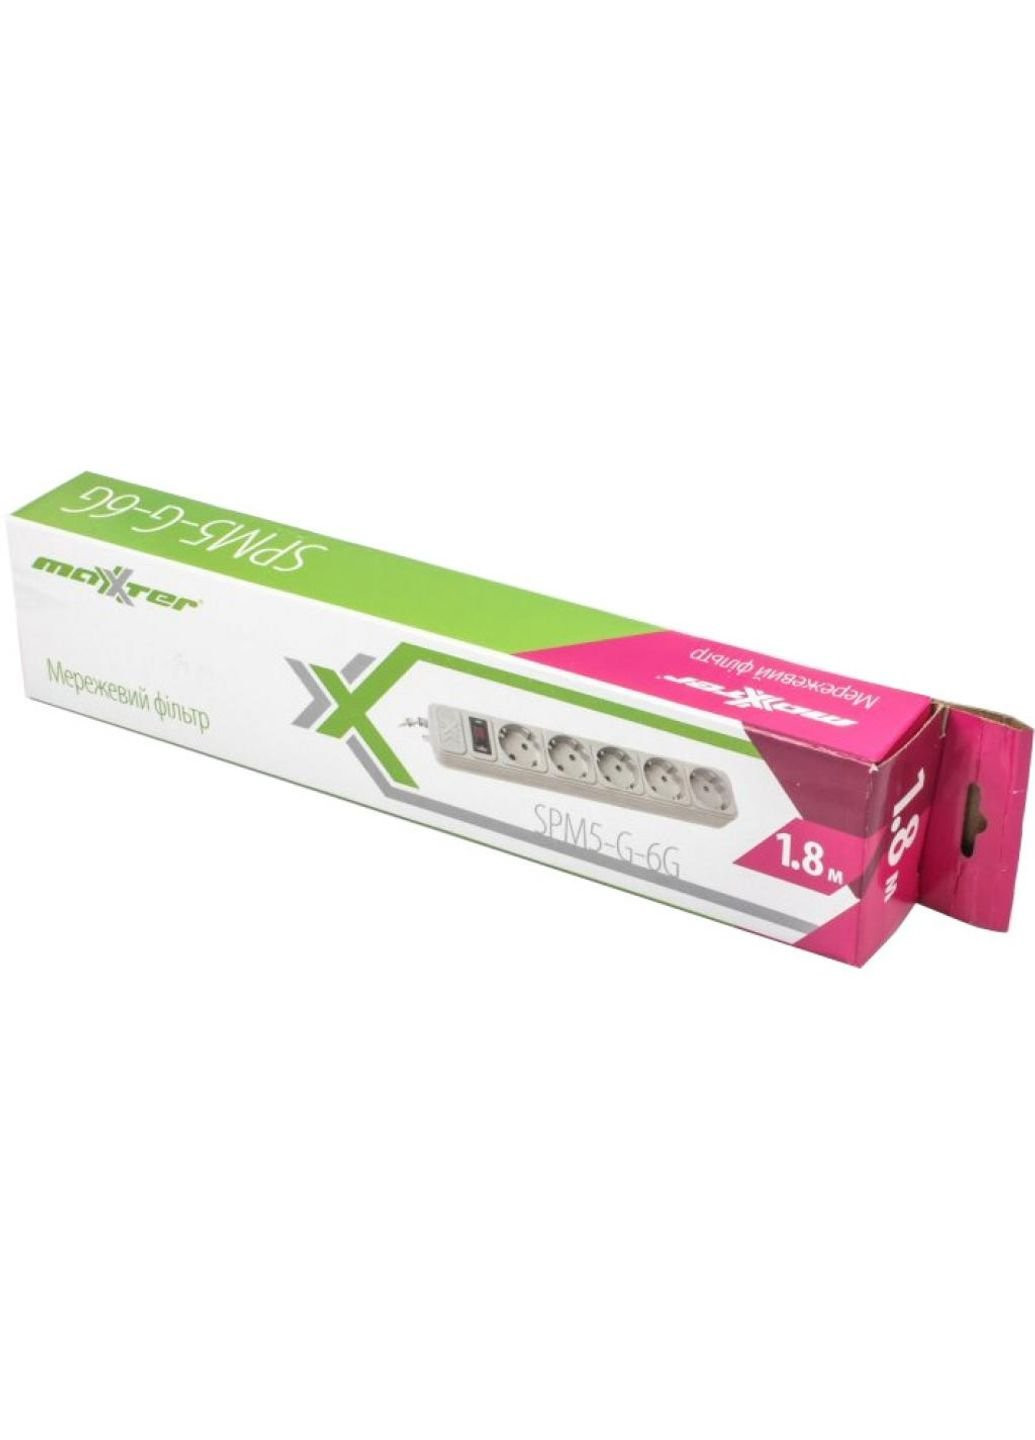 Сетевой фильтр питания SPM5-G-6G серый 1,8 м кабель, 5 розеток (SPM5-G-6G) Maxxter (251409626)